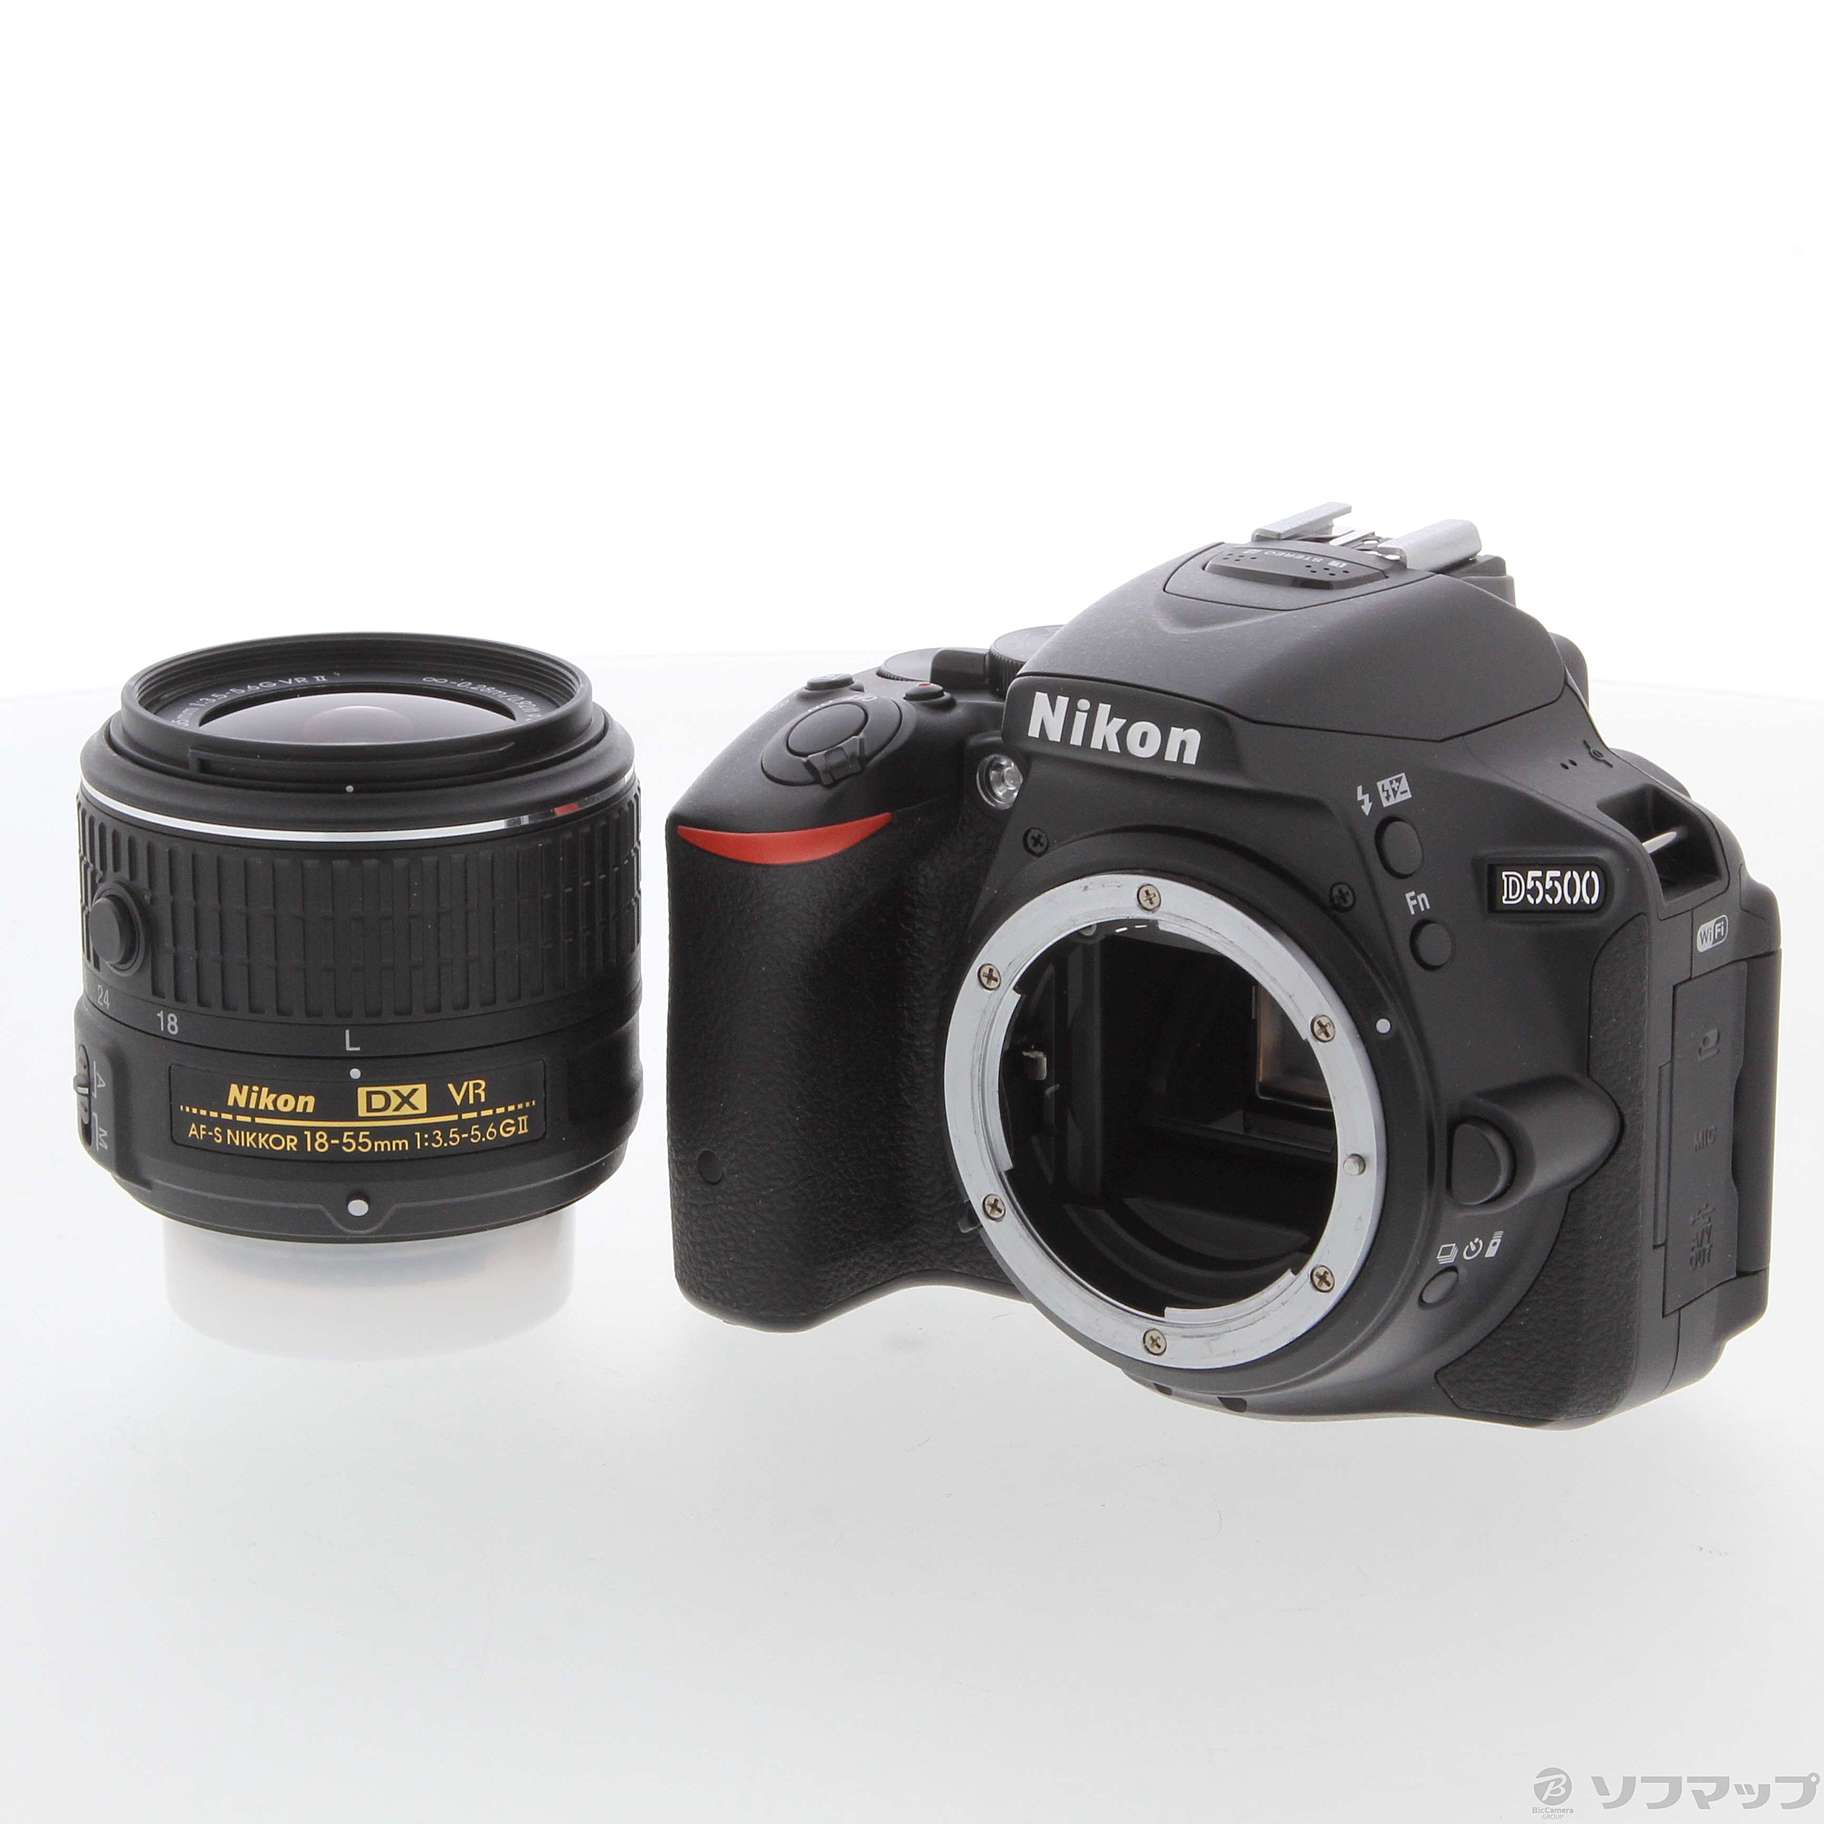 デジタル一眼Nikon 一眼レフ D5500      18-55 VRⅡ キット